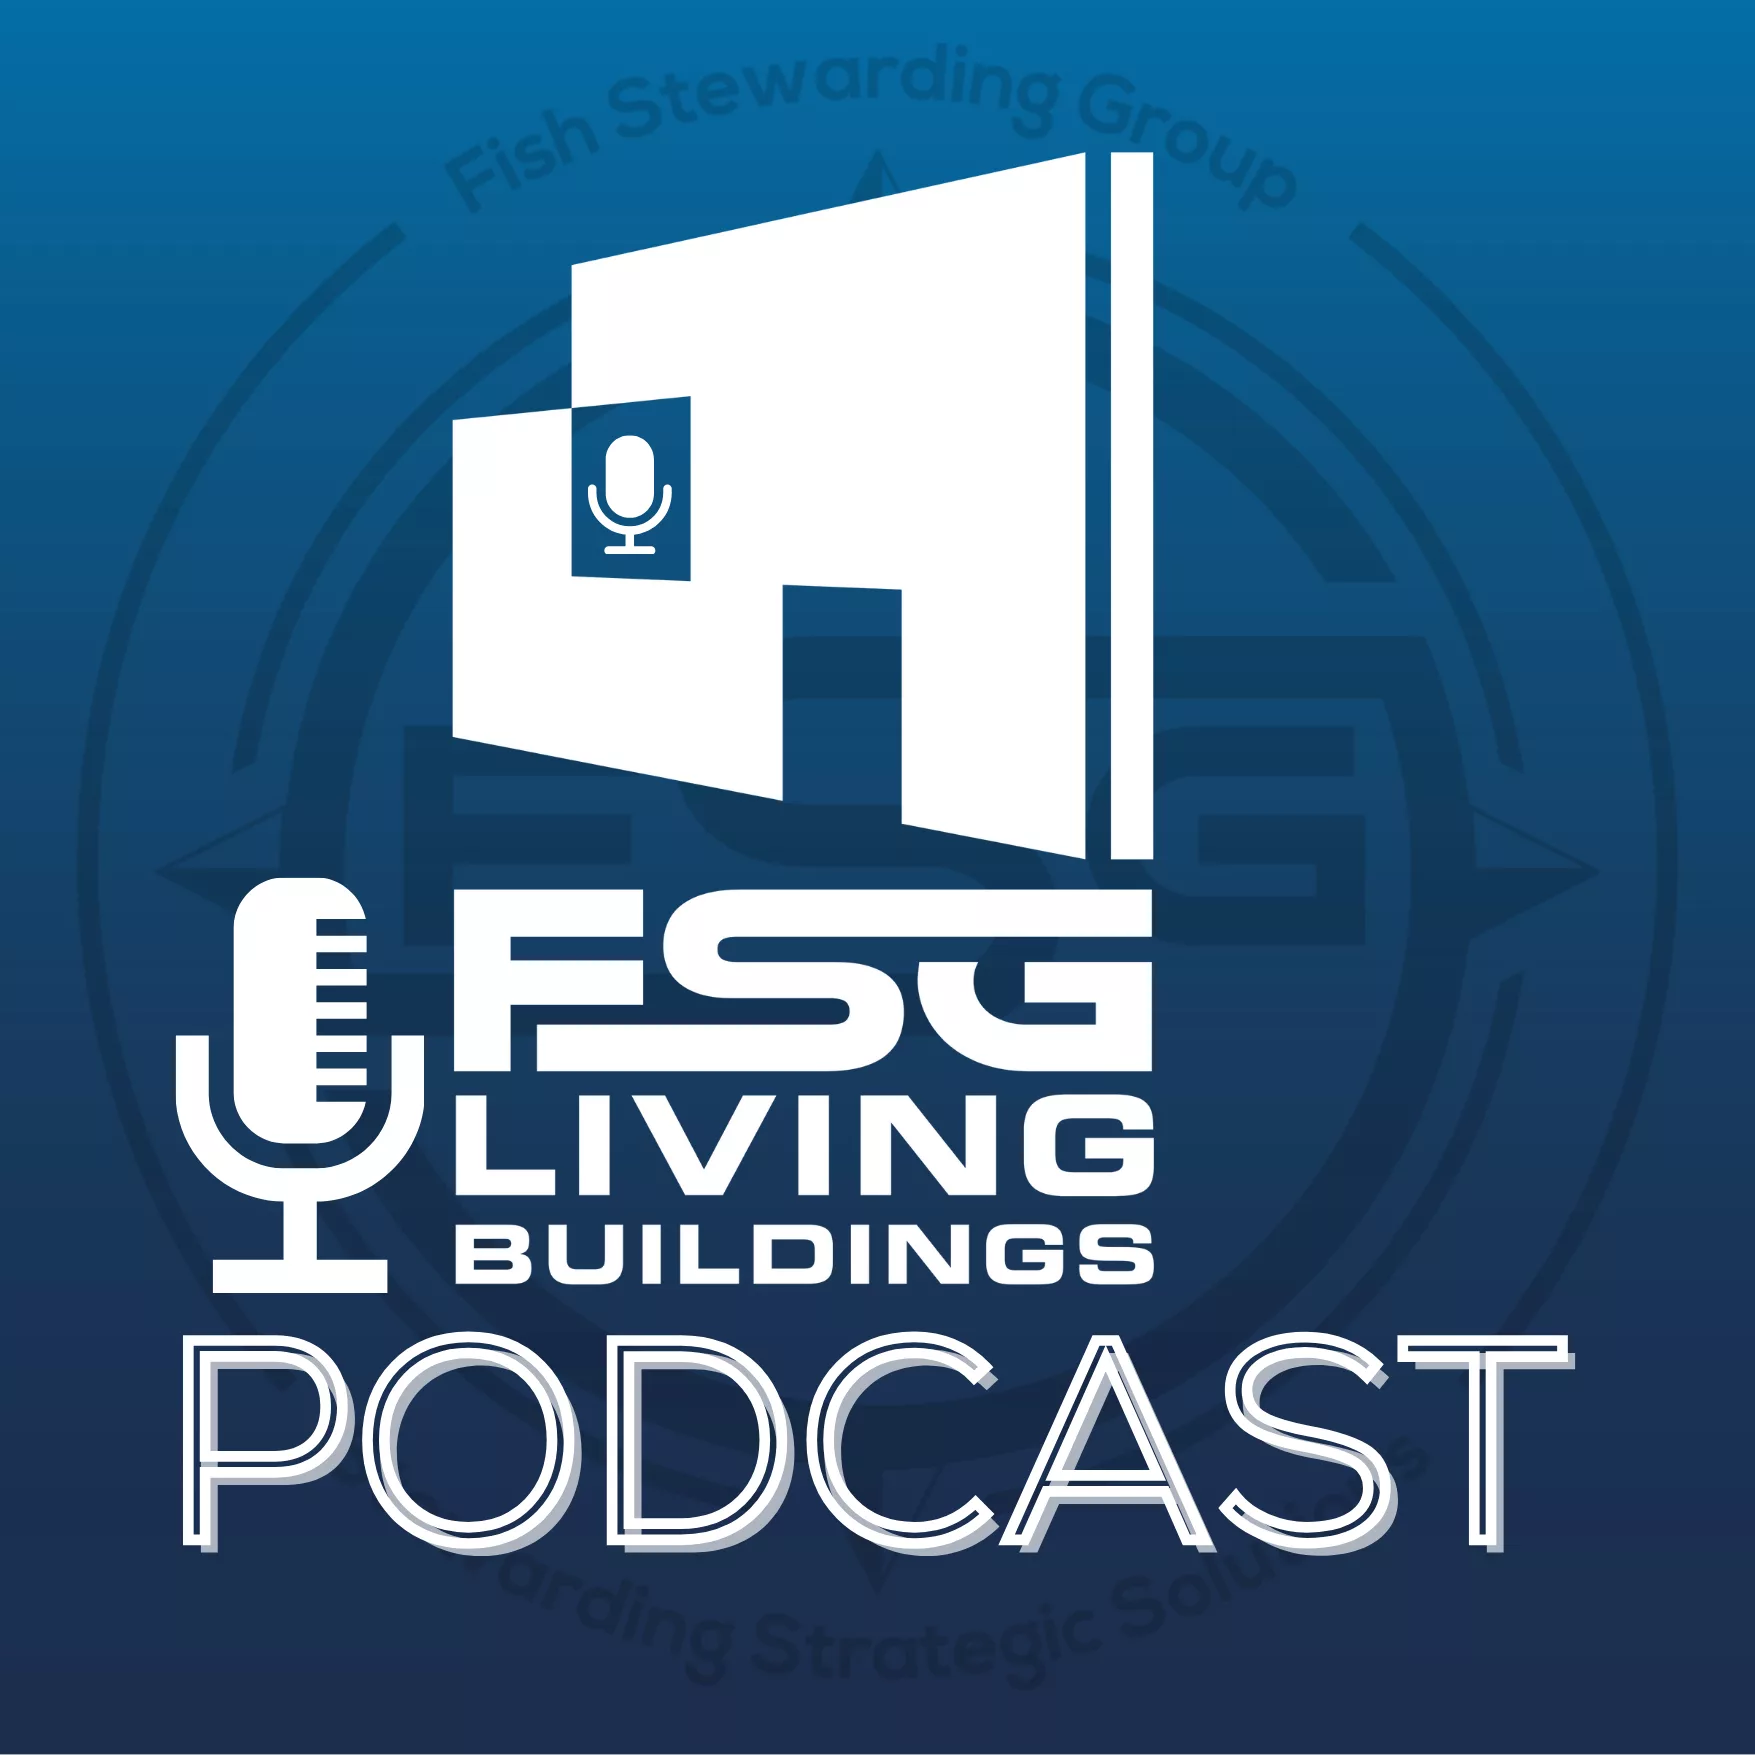 FSG living buildings podcast